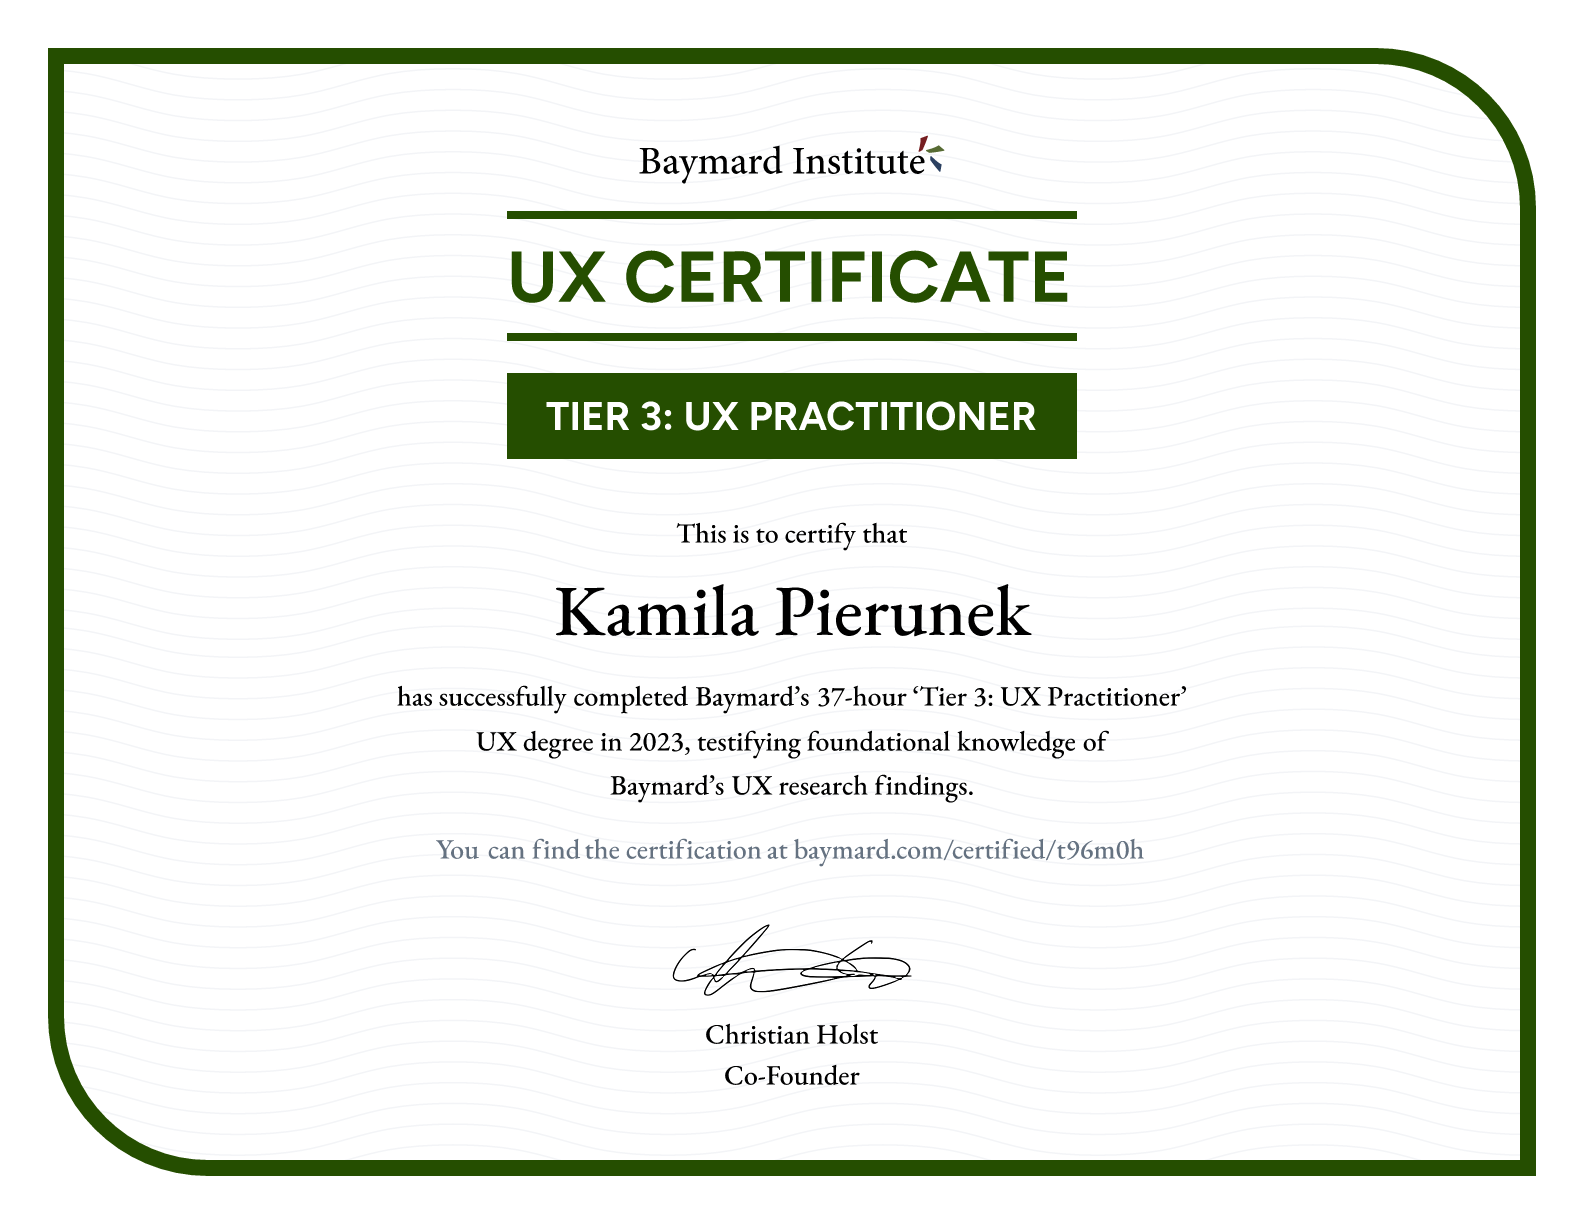 Kamila Pierunek’s certificate